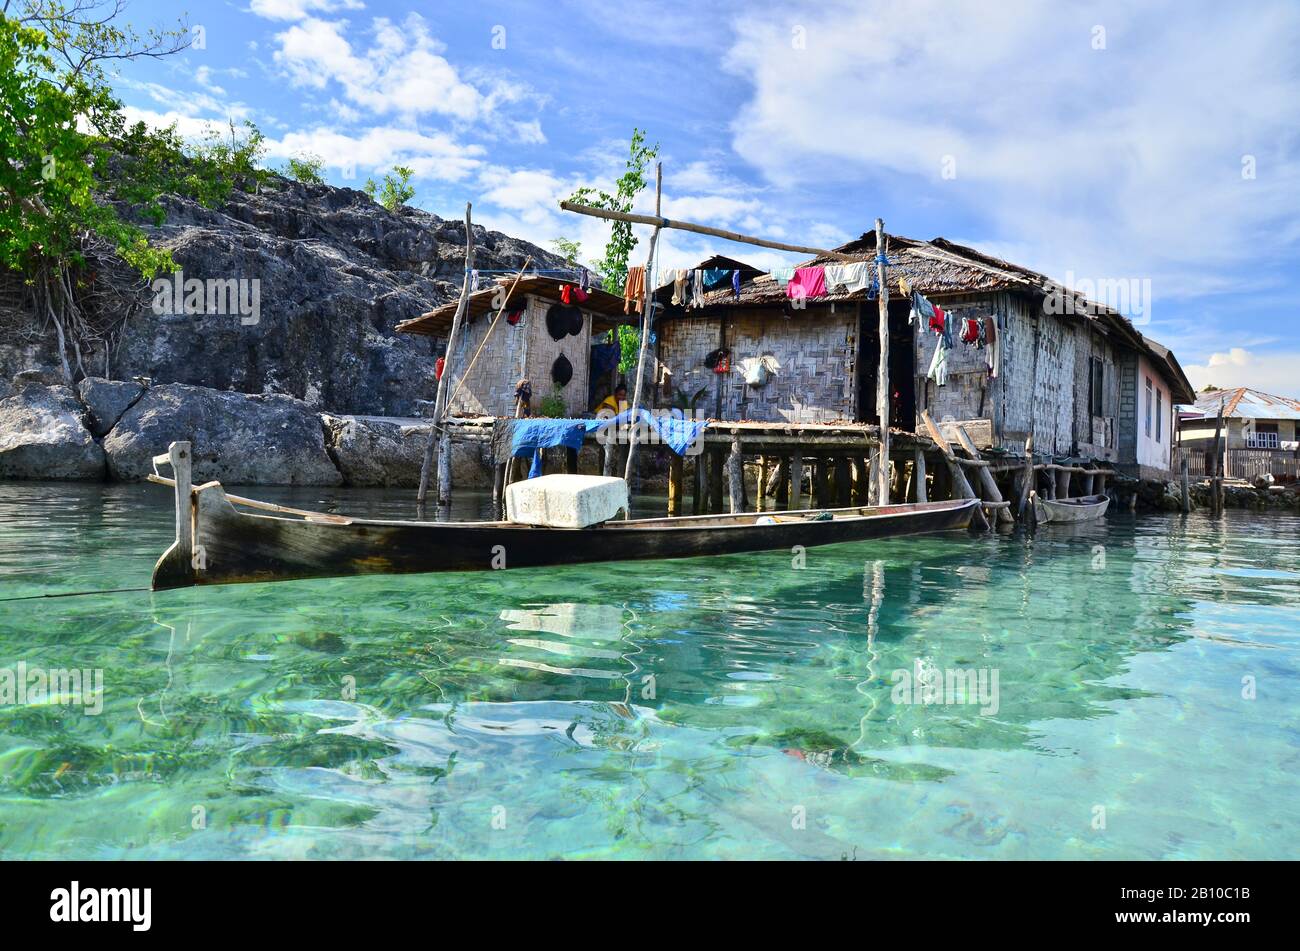 Villaggio con case a palafitta dei nomadi del mare di Bajau, Isola di Malenge, Baia di Tomini, Isole Togiane, Sulawesi, Indonesia Foto Stock